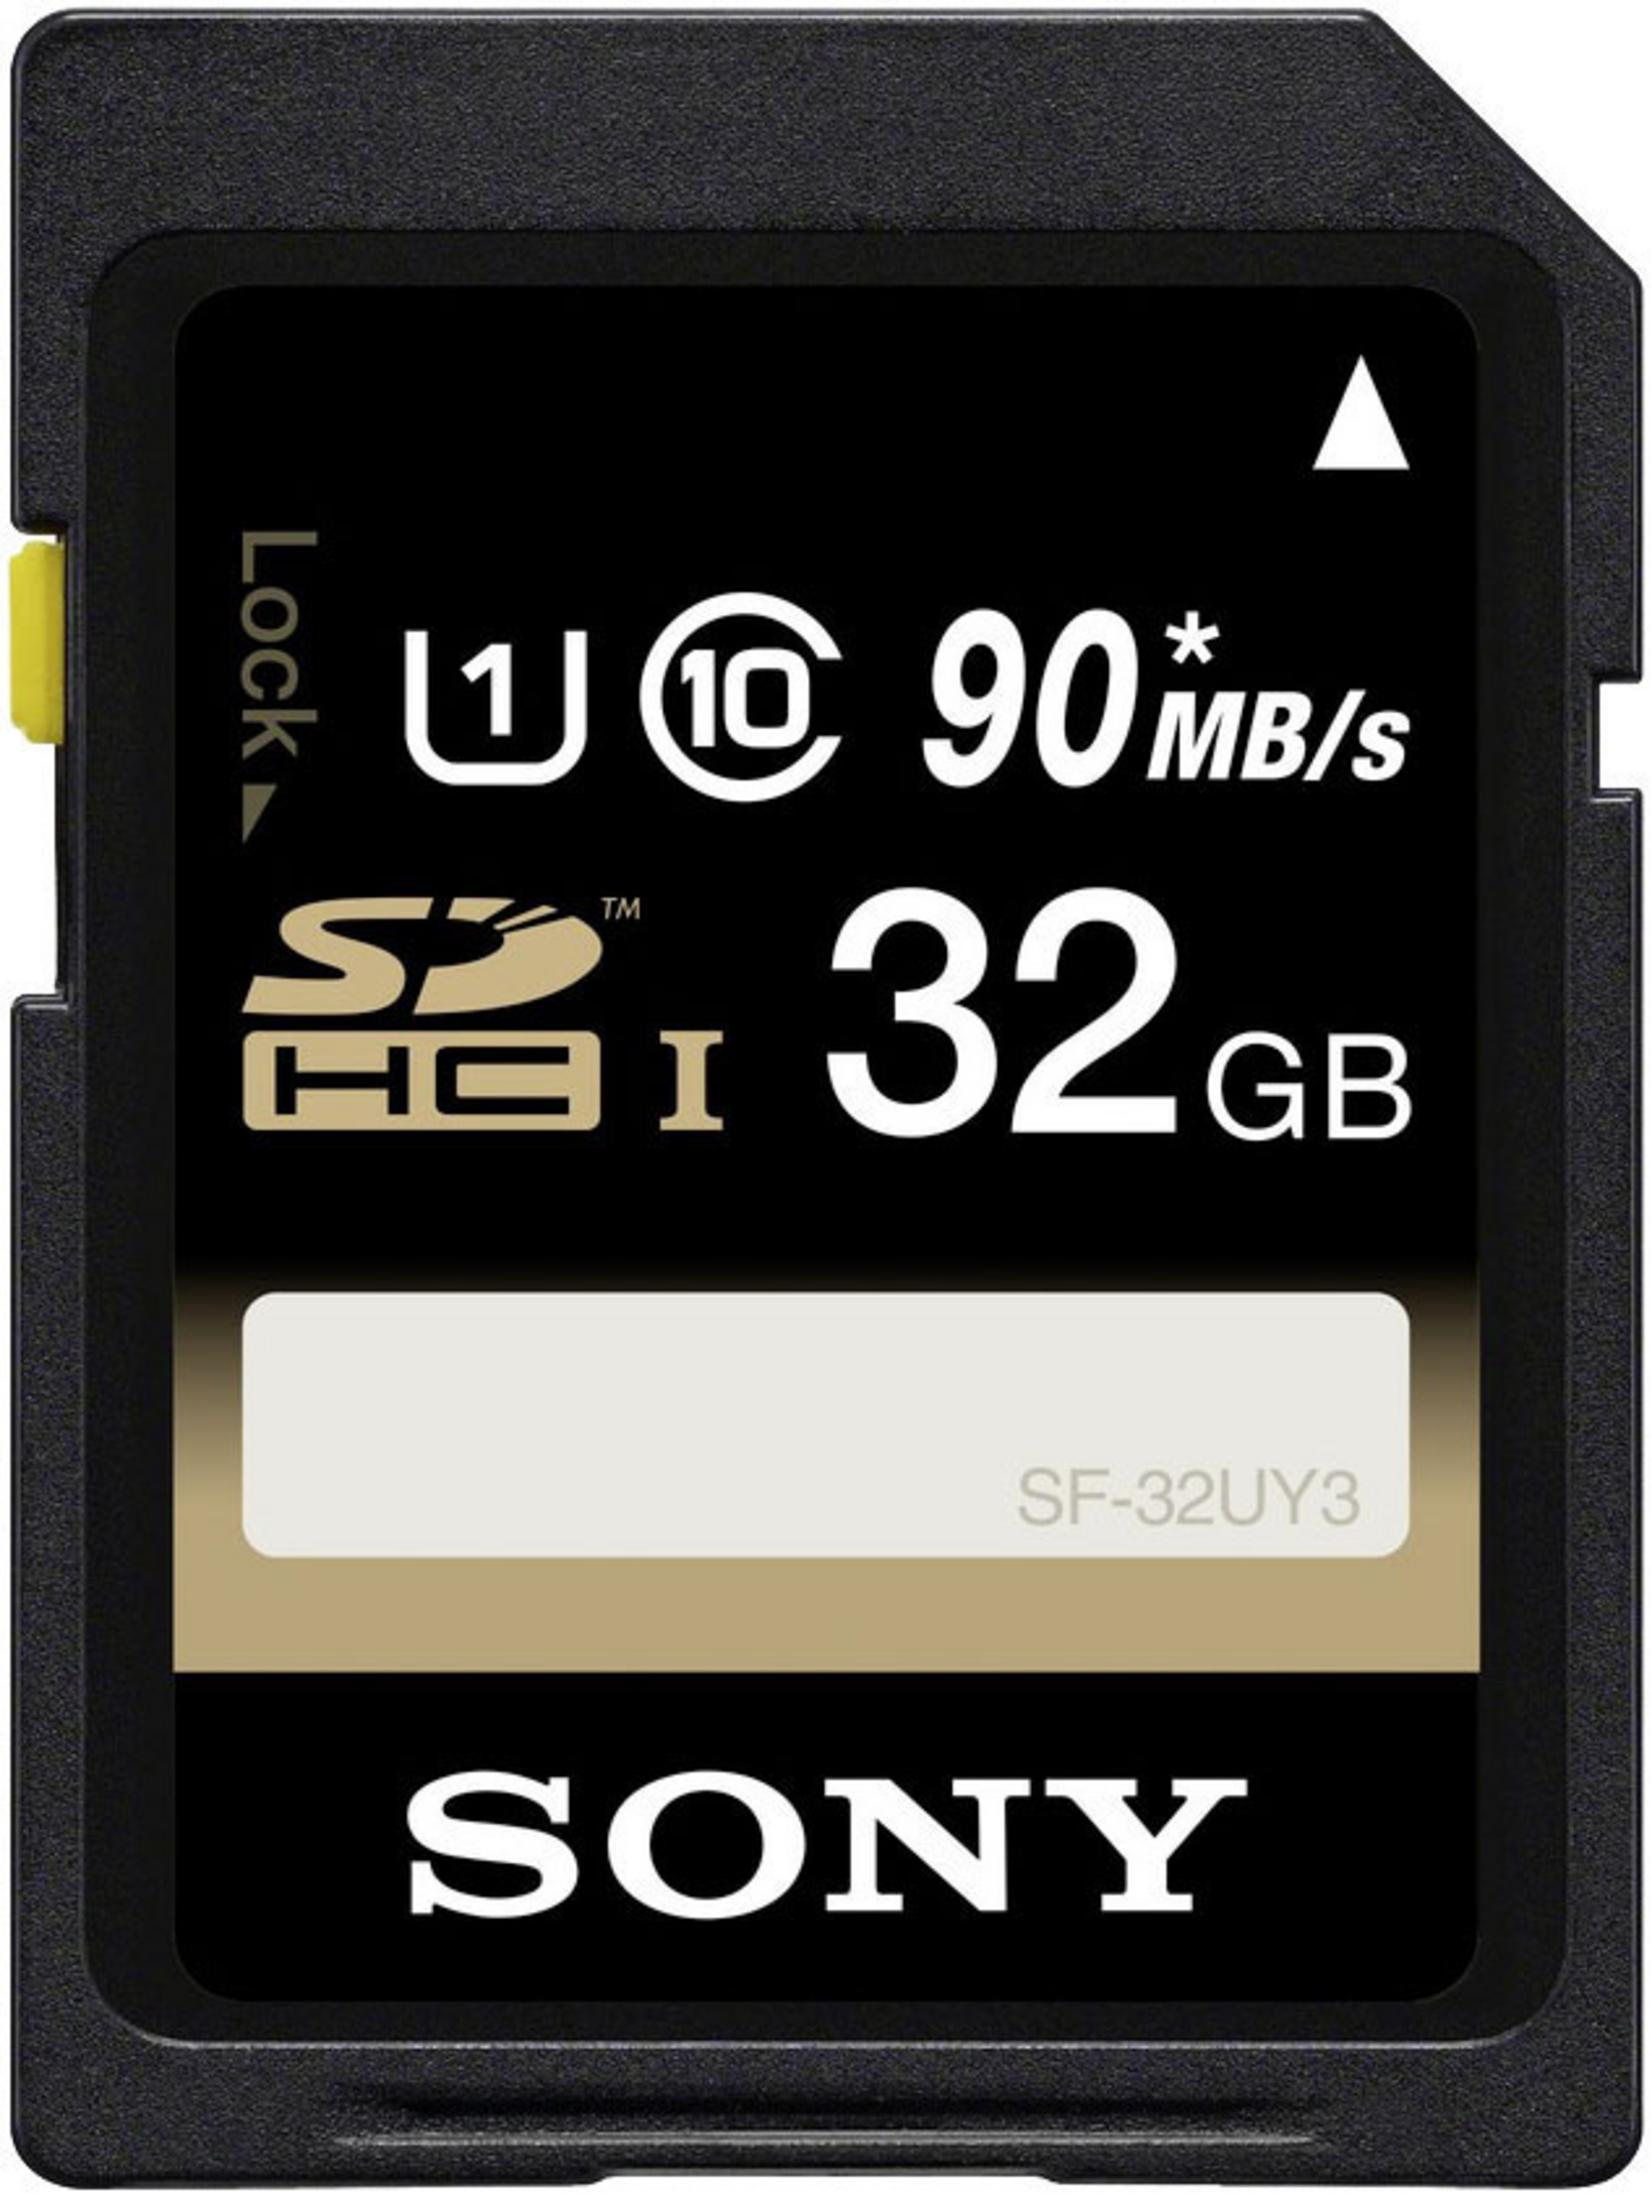 SONY SF SDHC MB/s GB, Speicherkarte, 32 32U, 90